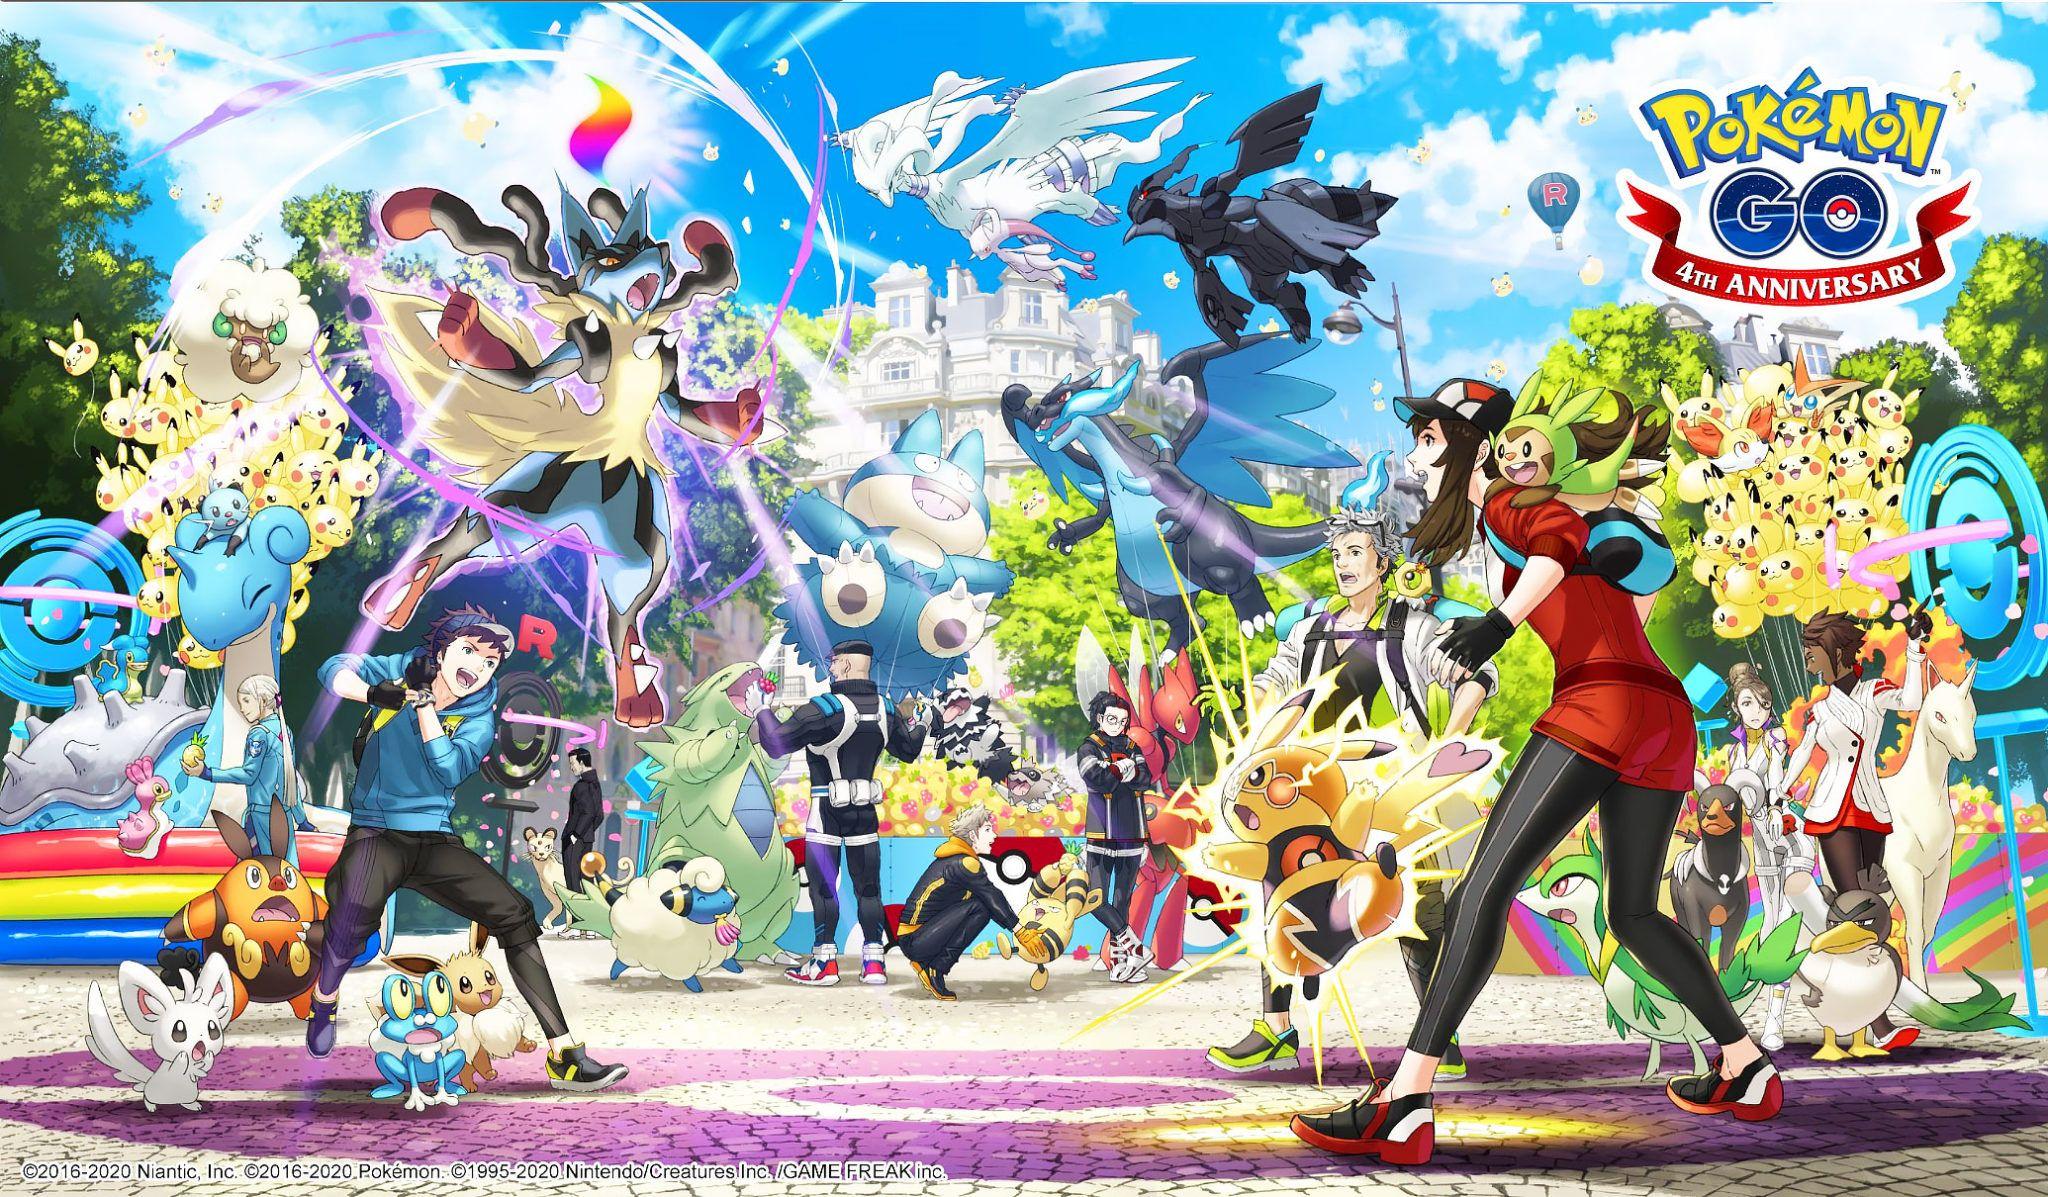 Pokémon Go fête cette année son quatrième anniversaire cette année